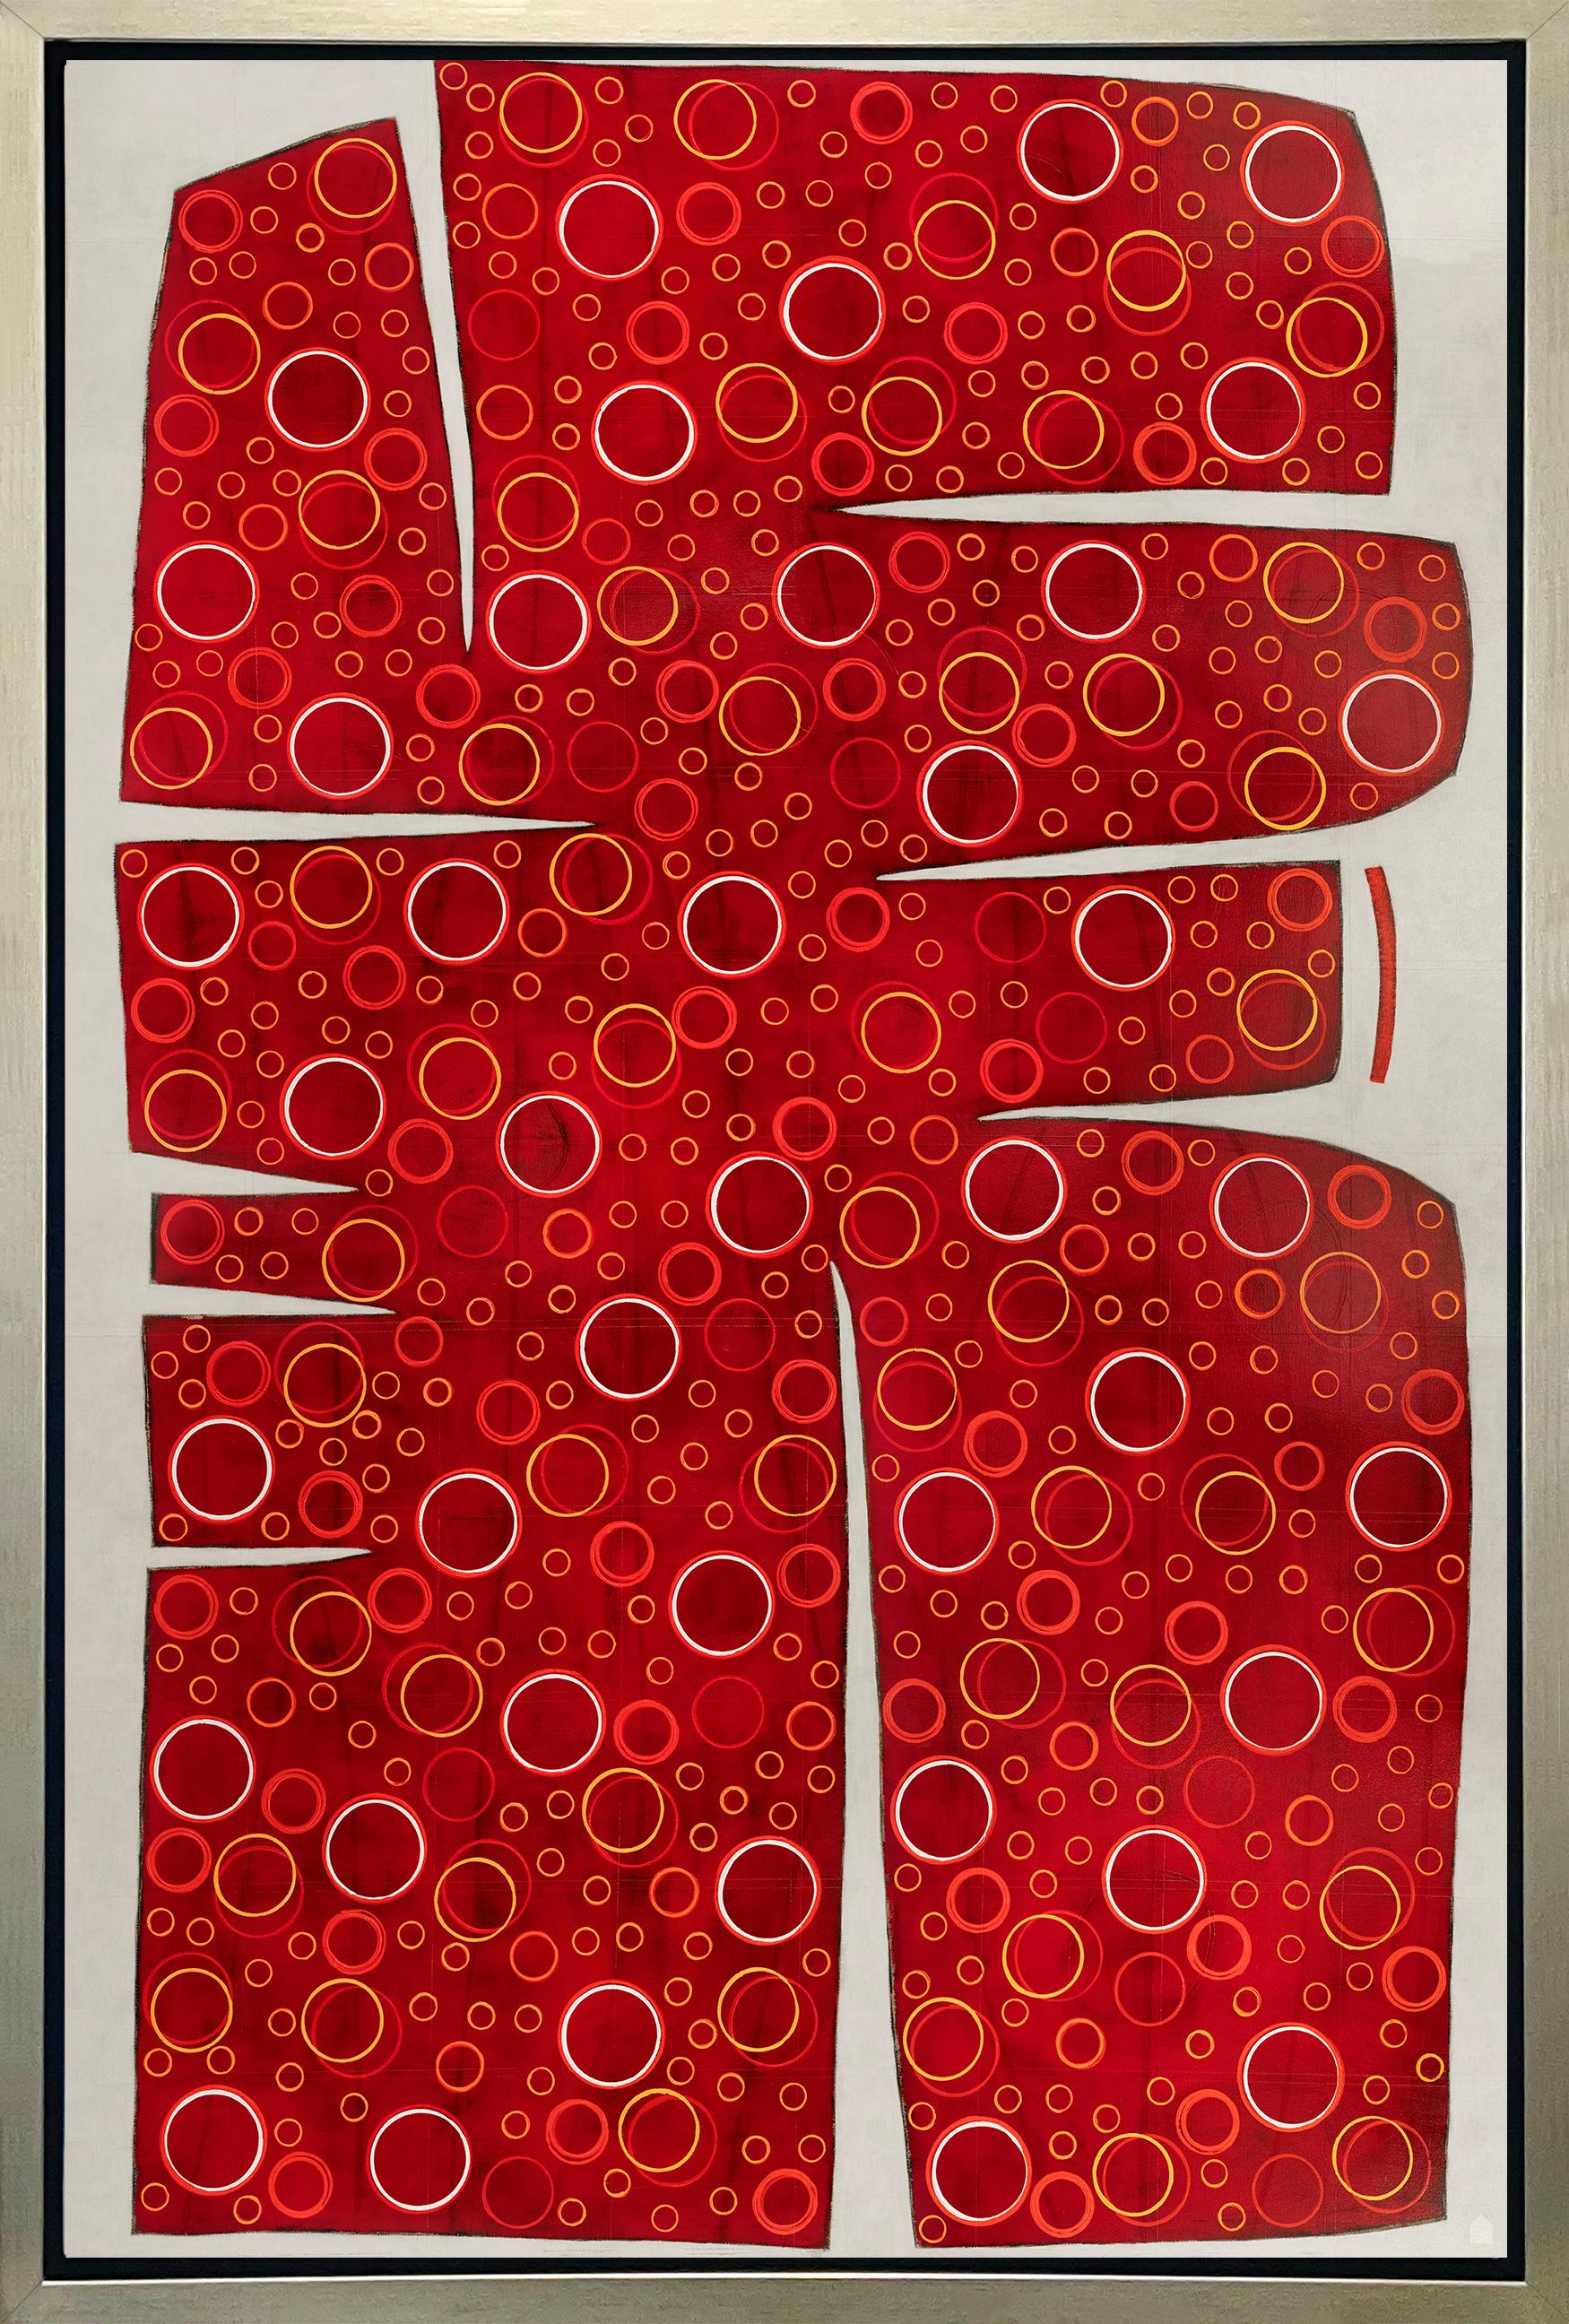 « Totem », imprimé giclée encadré en édition limitée, 137 x 91 cm